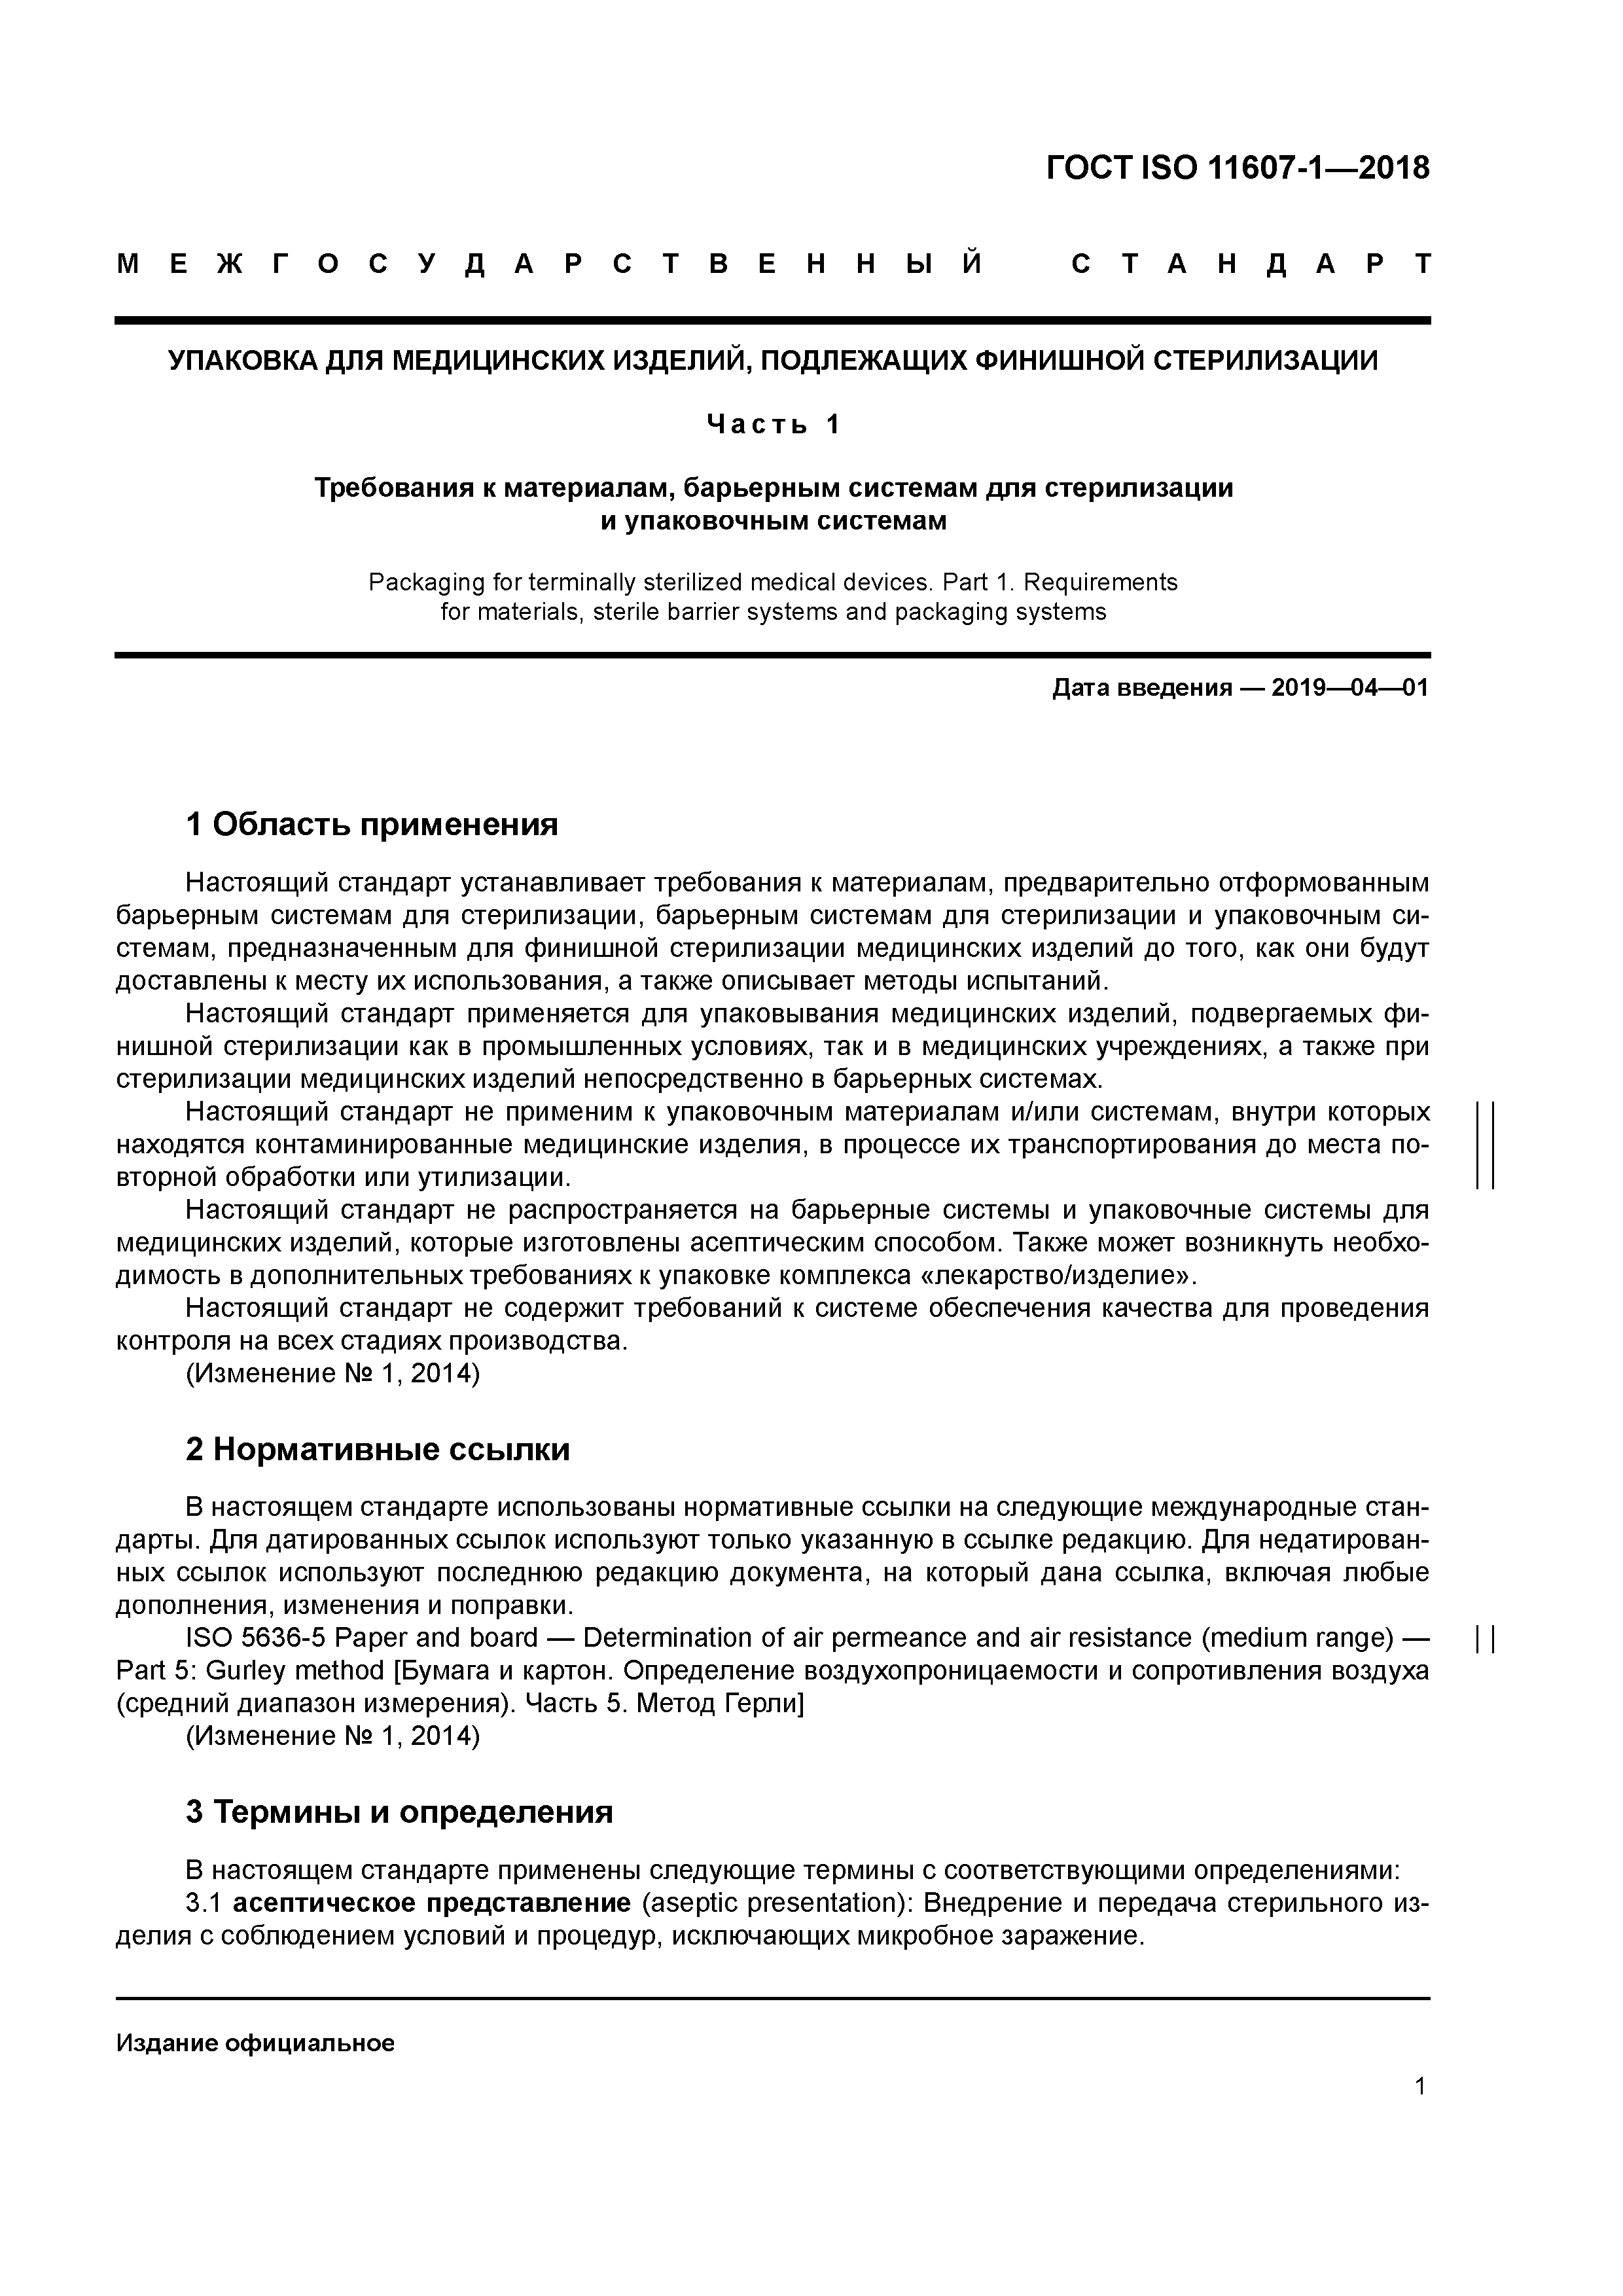 ГОСТ ISO 11607-1-2018